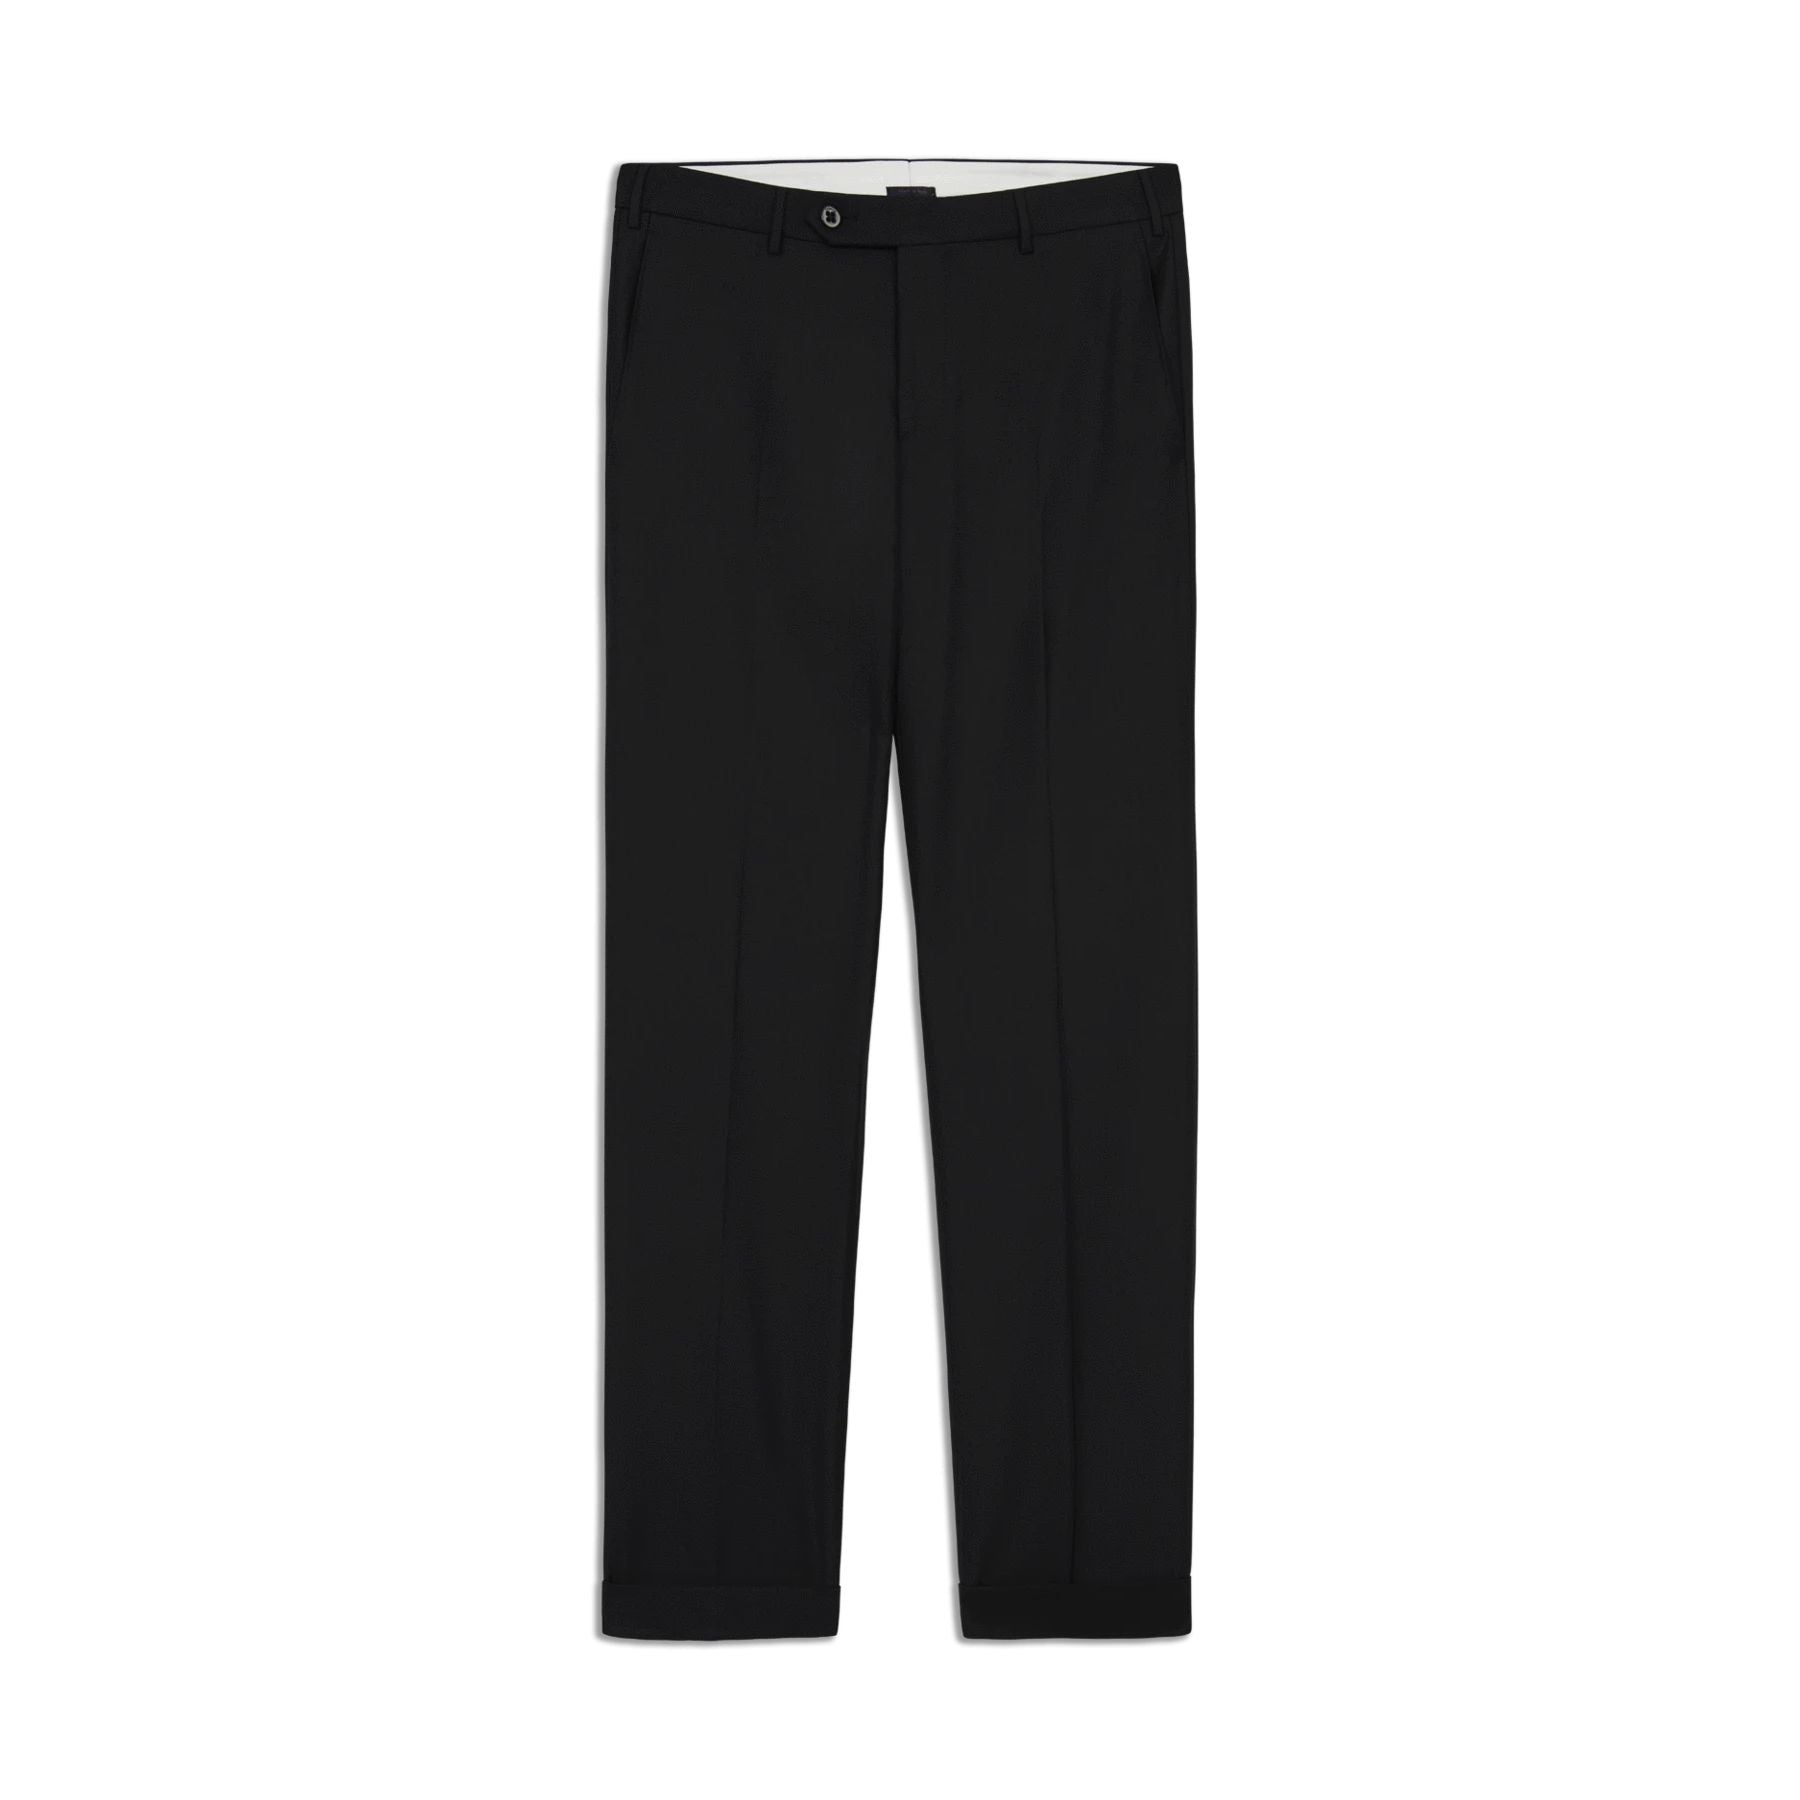 Parker Flat Front Sharkskin Wool Trouser in Black, Size 42 (Modern Straight Fit) by Zanella